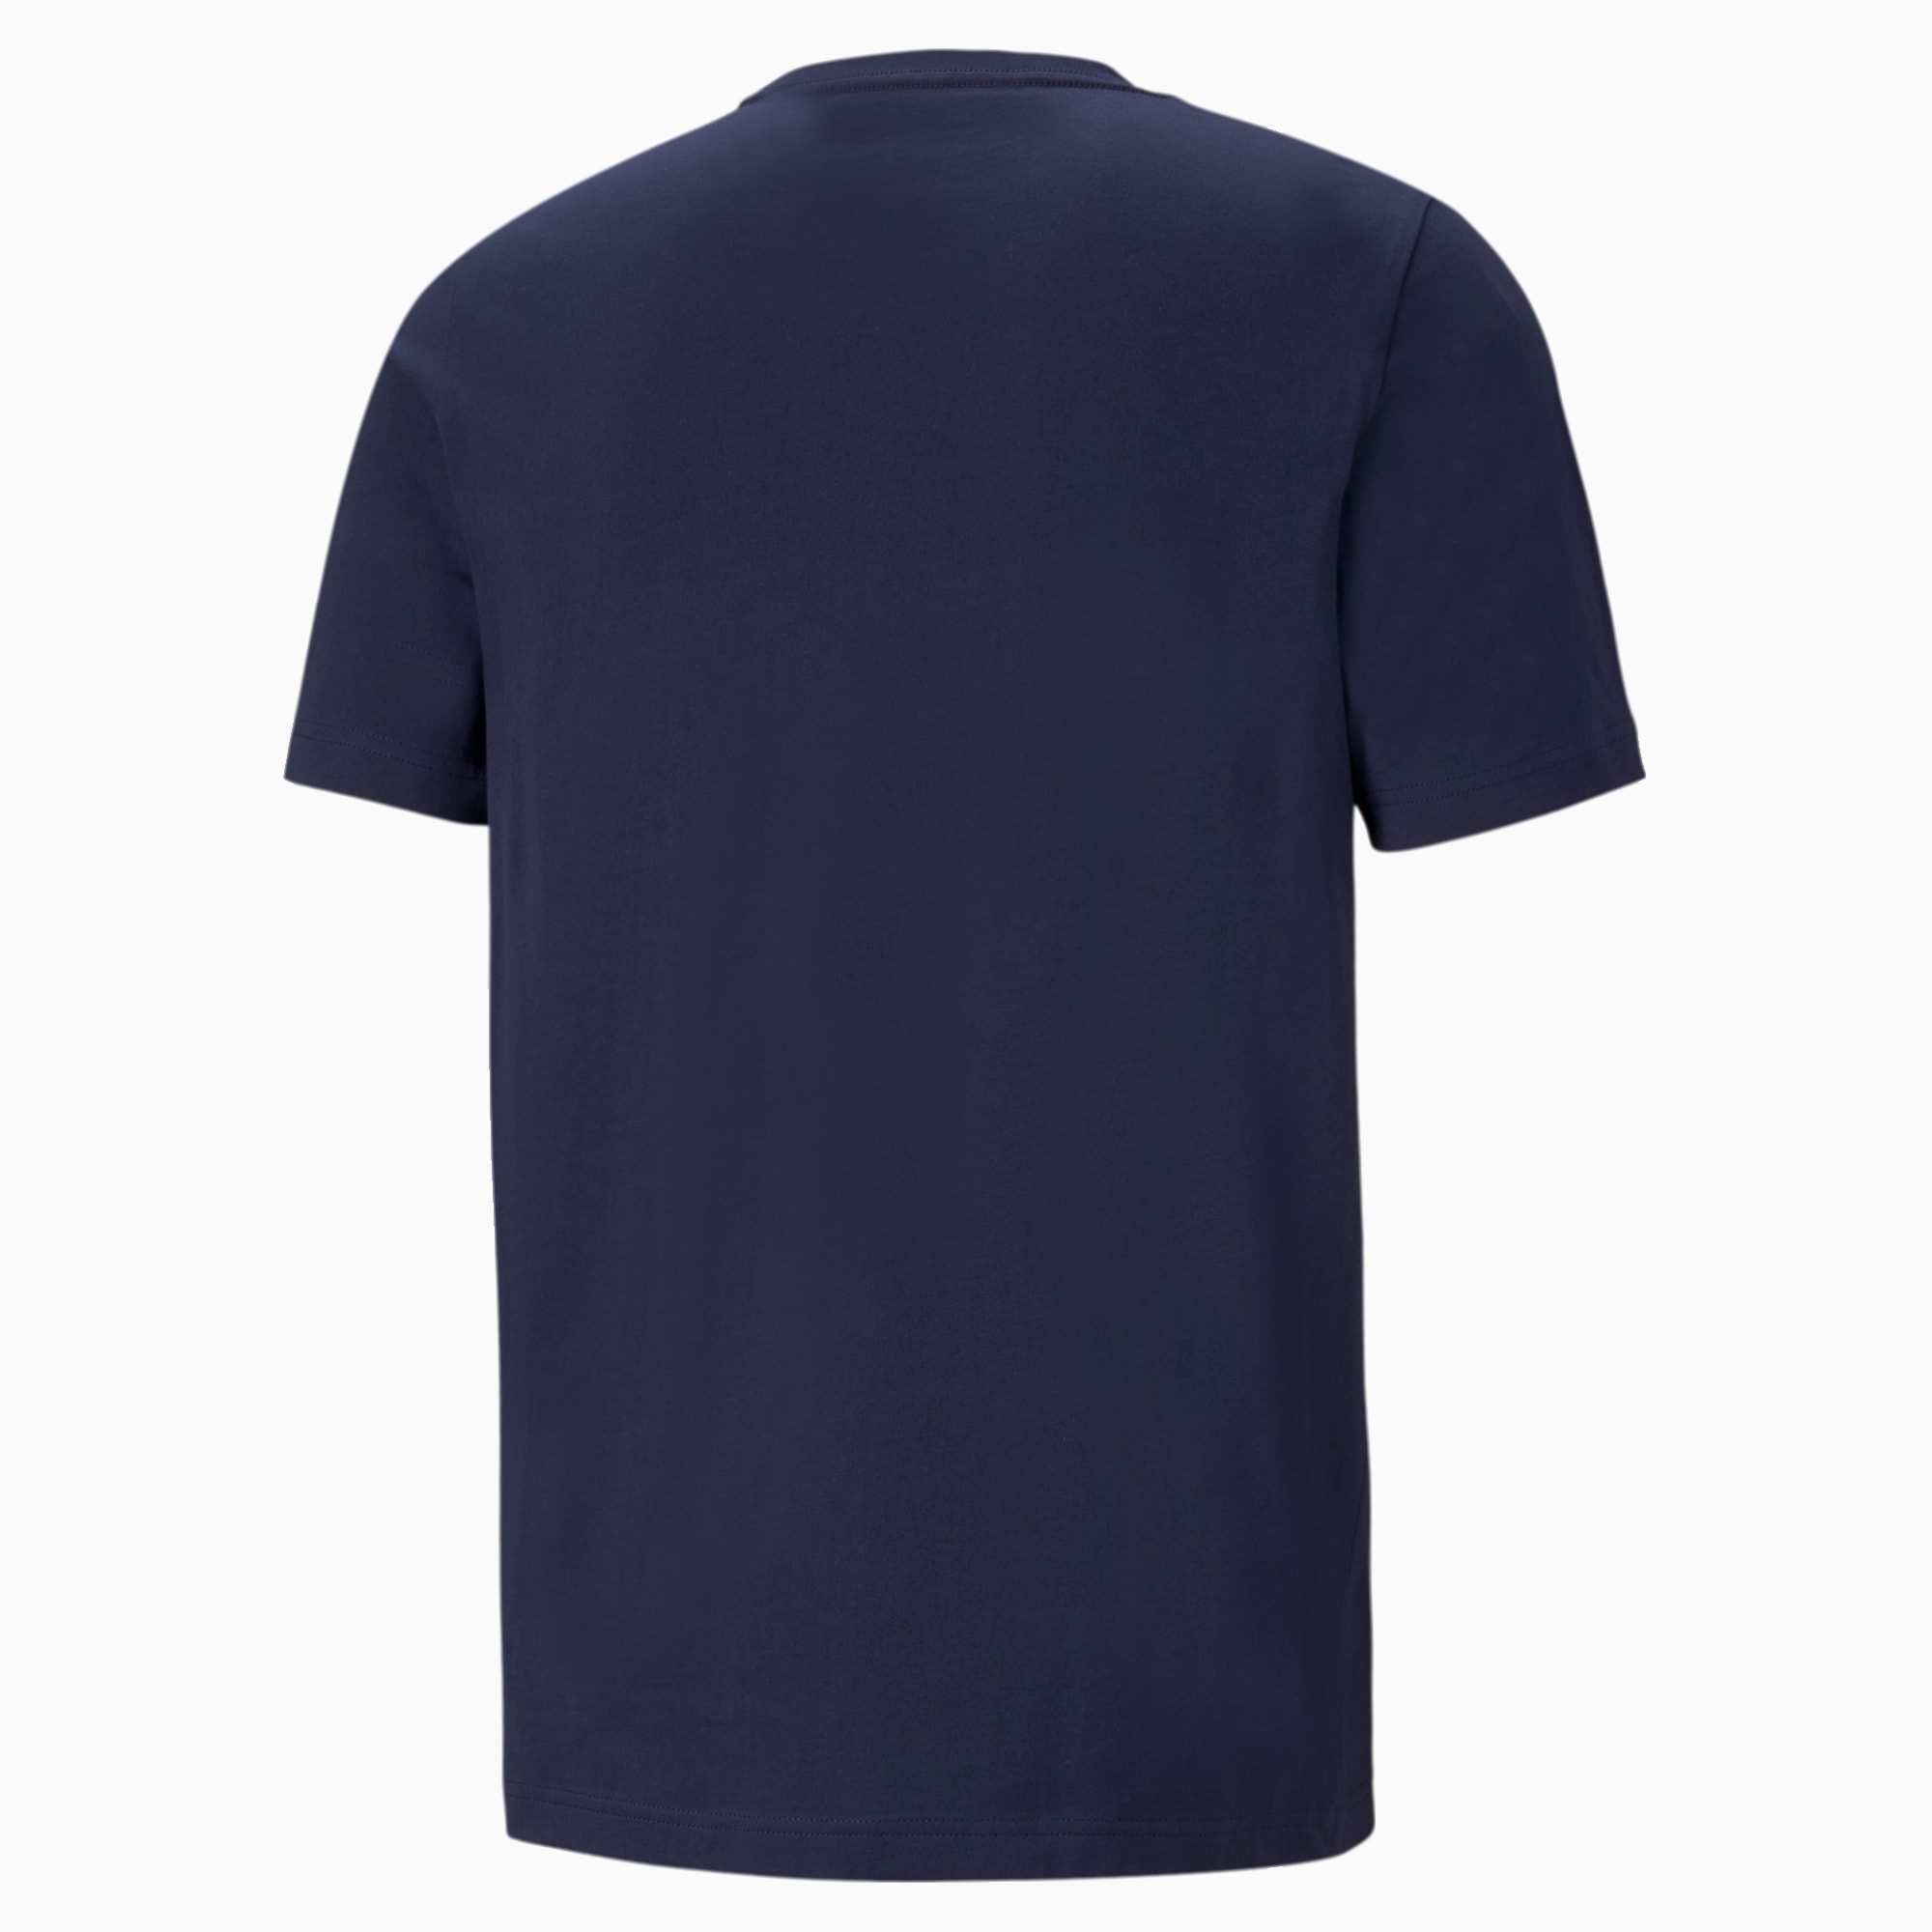 PUMA Essentials Logo Men's T-Shirt, Peacoat, Size XS, Clothing